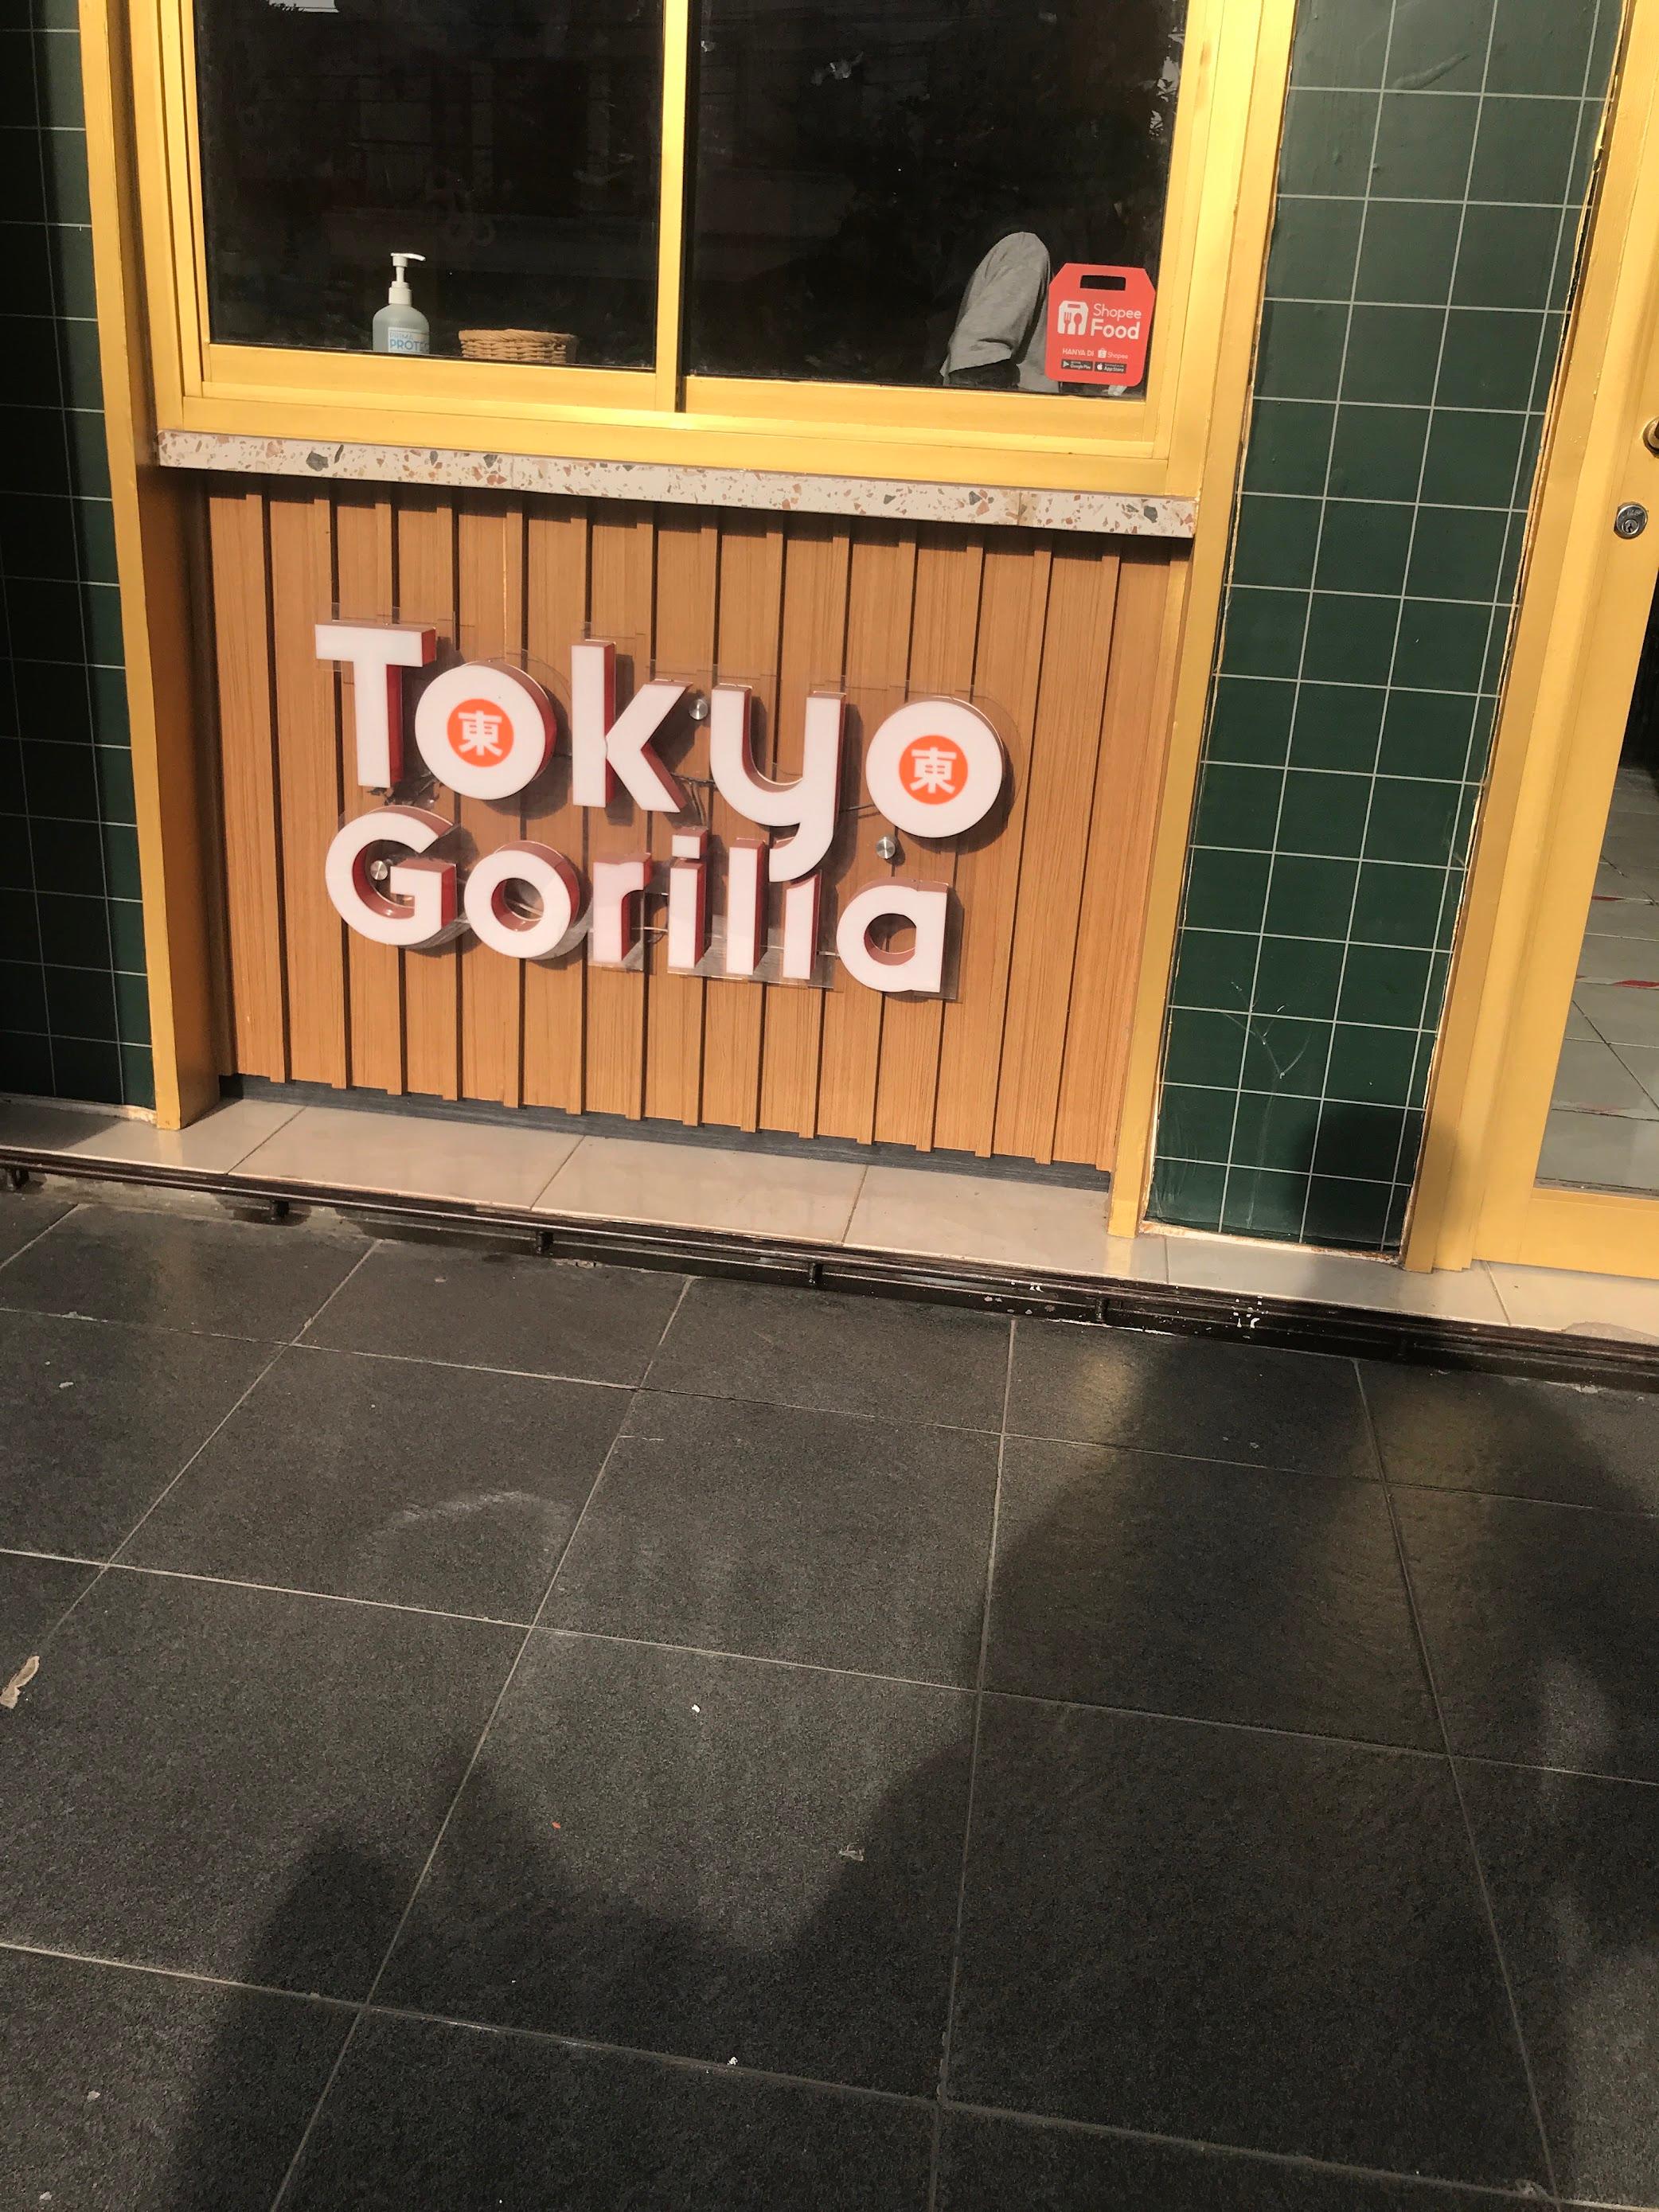 Tokyo Gorilla Merbau Palembang review